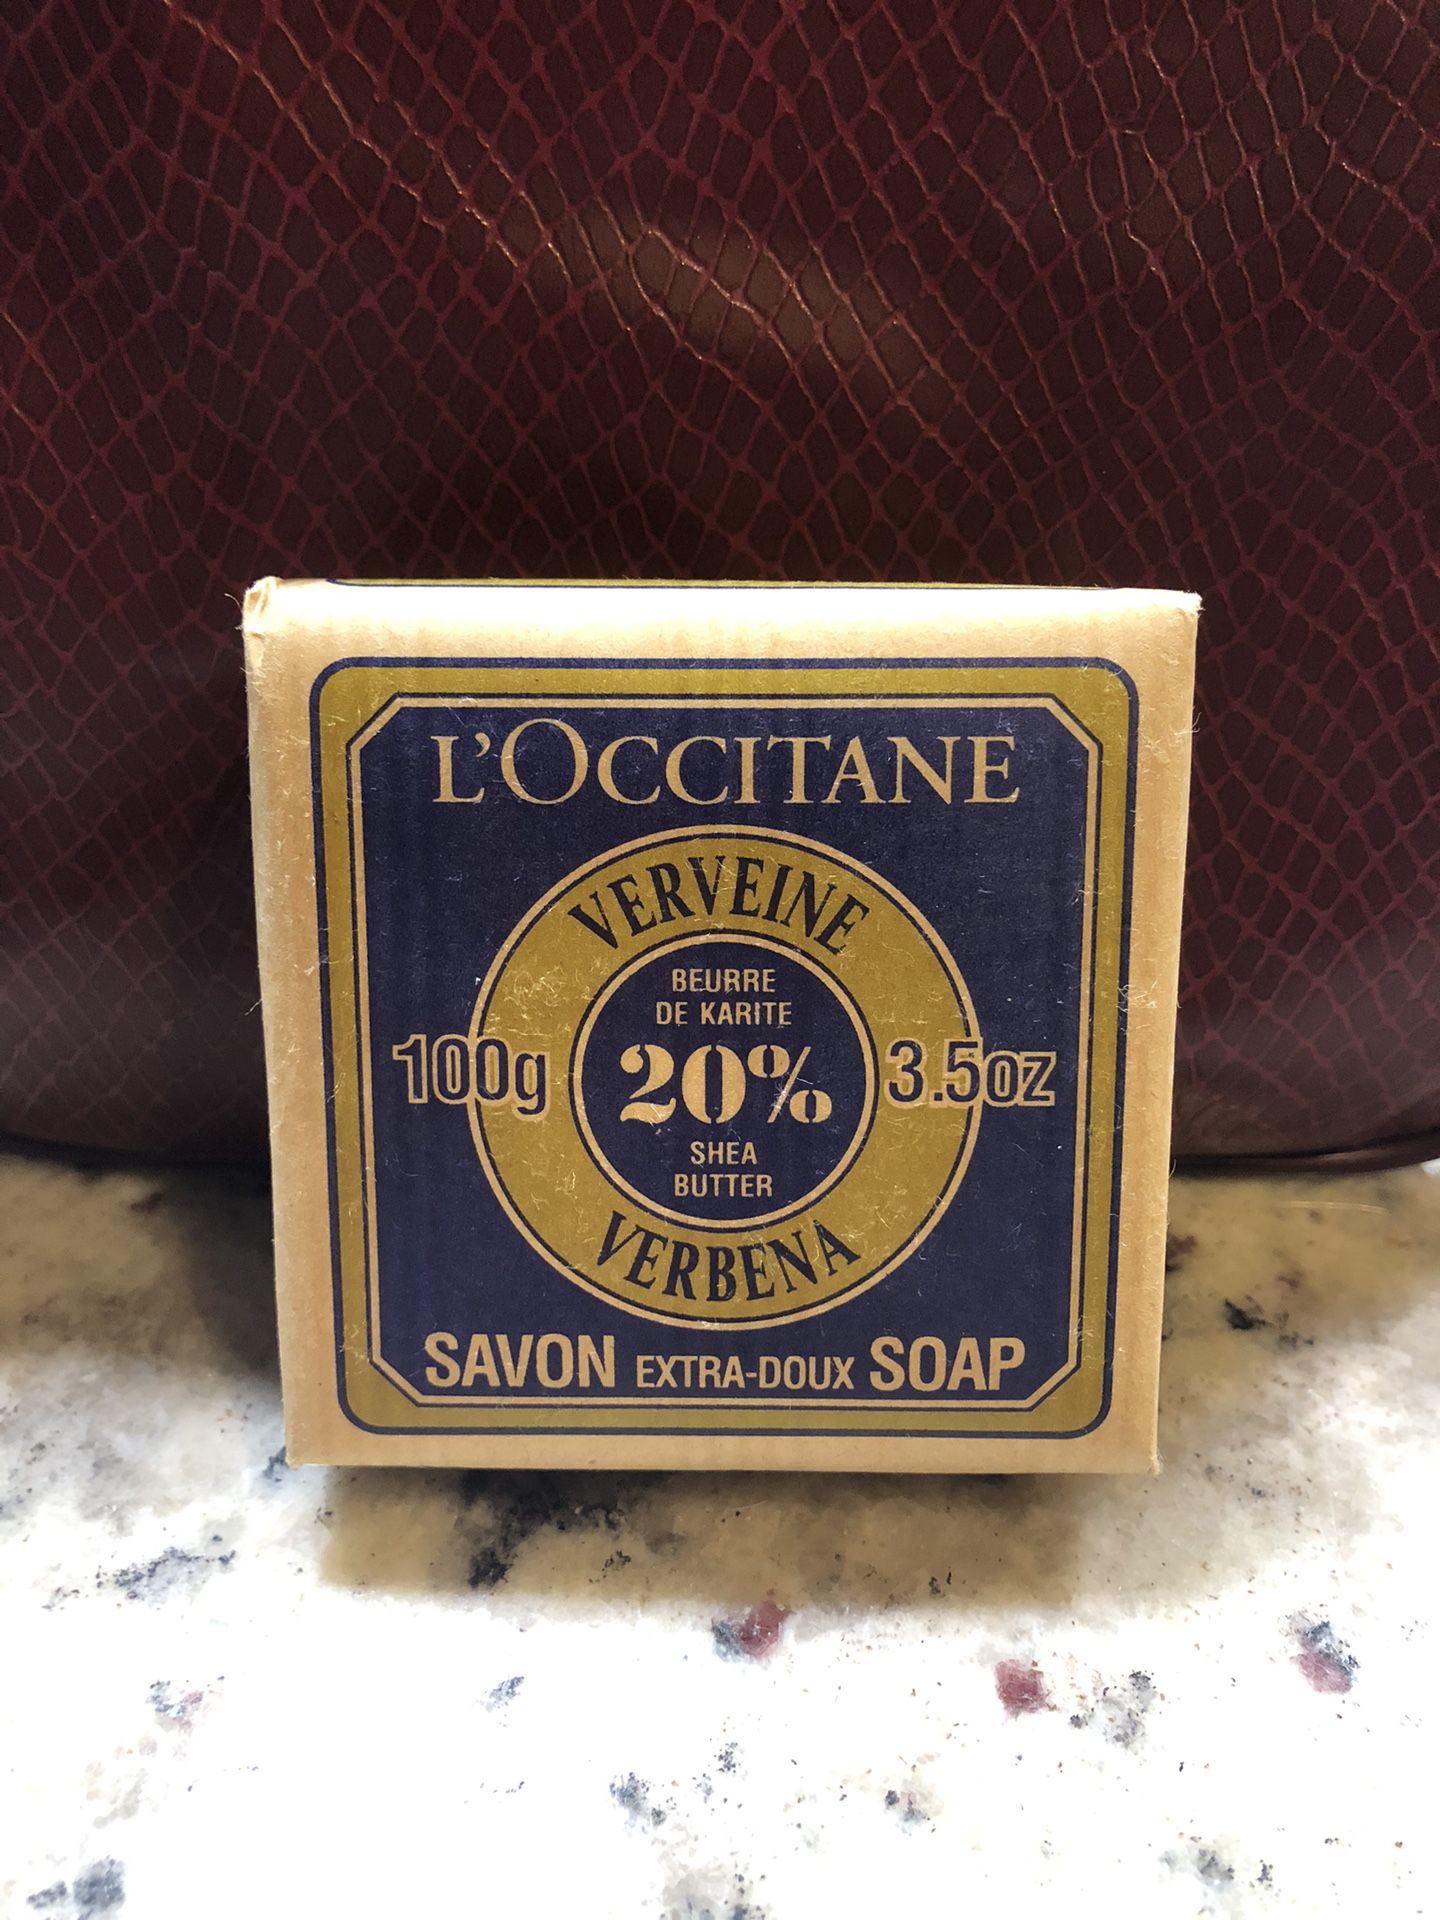 L’Occitane Verveine Verbena She’s Soap 3.5oz 100g - New